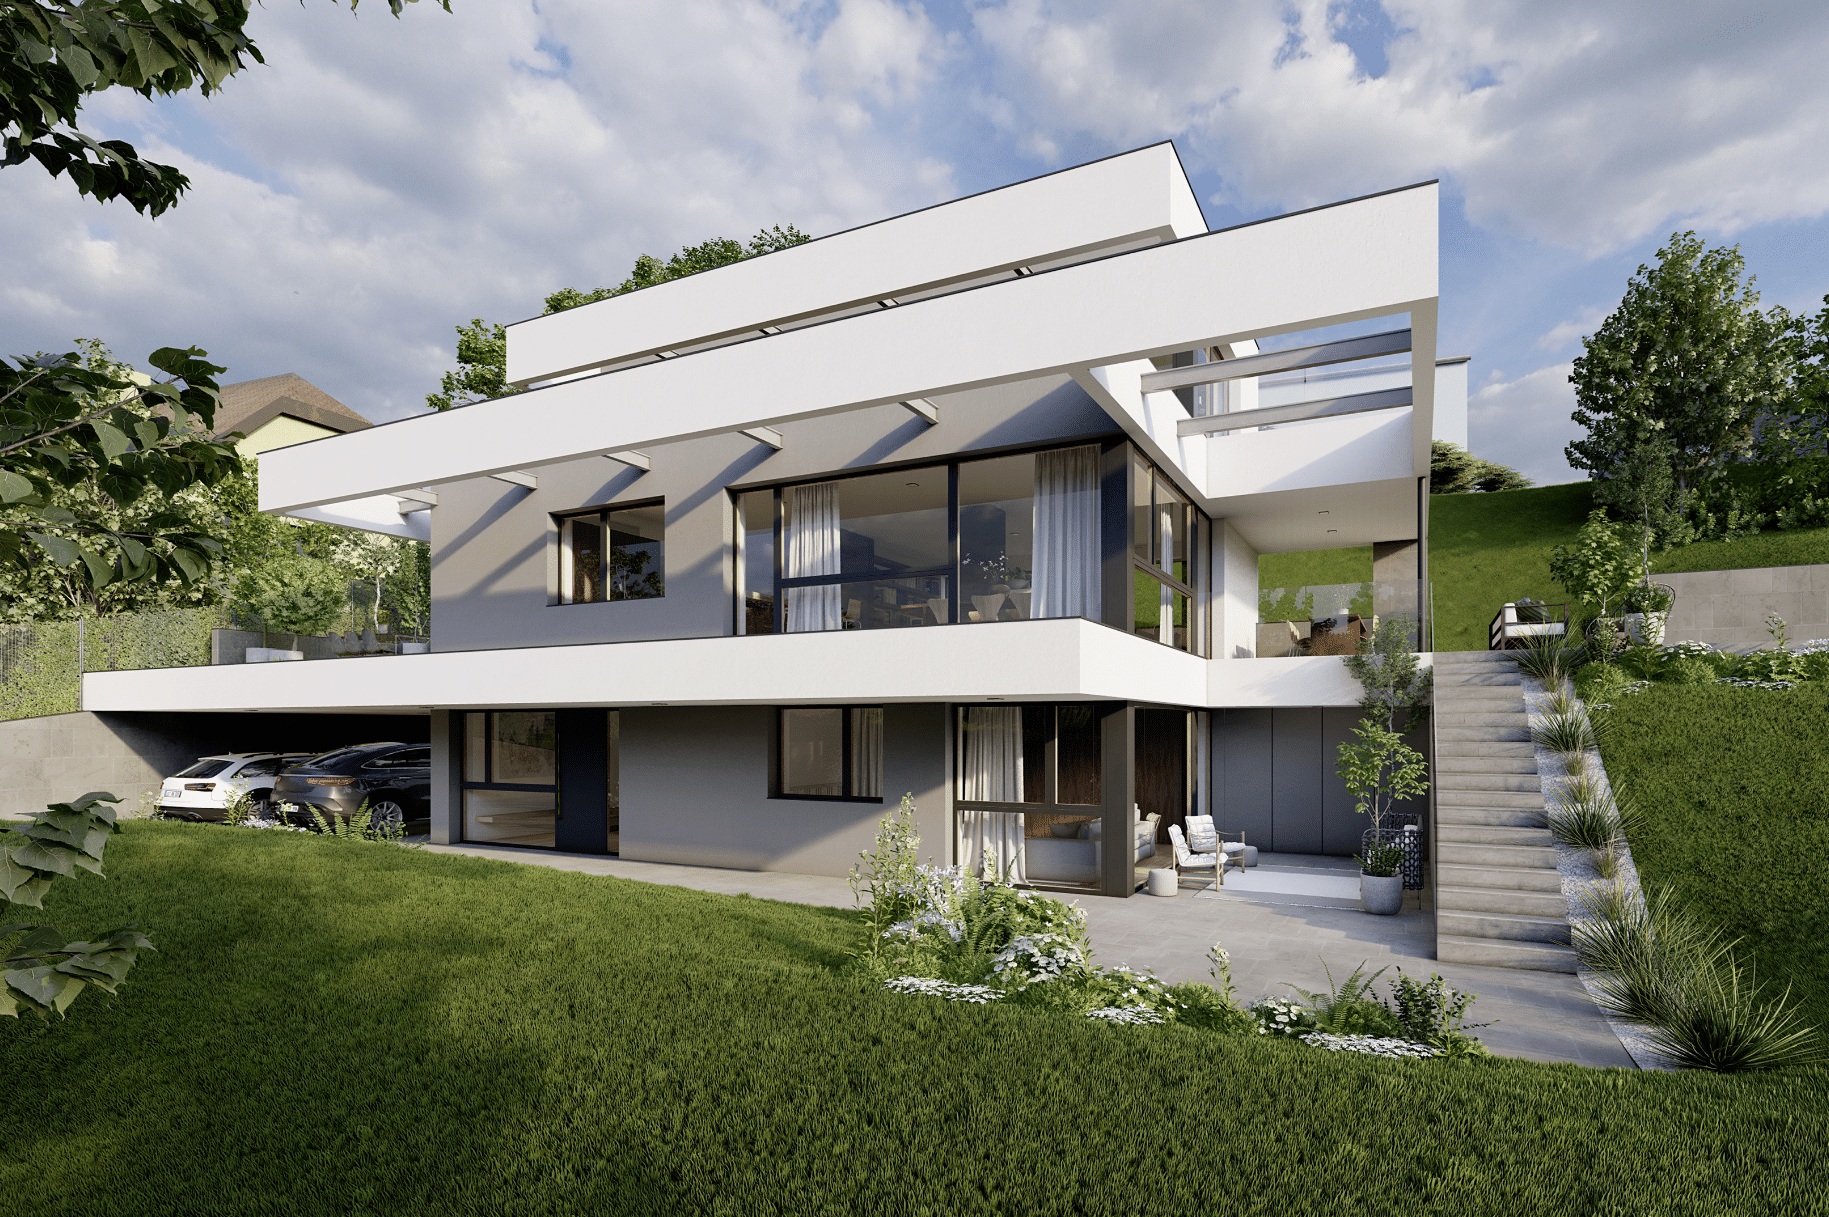 AL ARCHITEKT ZT GmbH zeigt ein sehr modernes Haus in Hanglage mit toller Architektur. Große Fensterflächen bringen viel Licht in das Flachdachhaus.